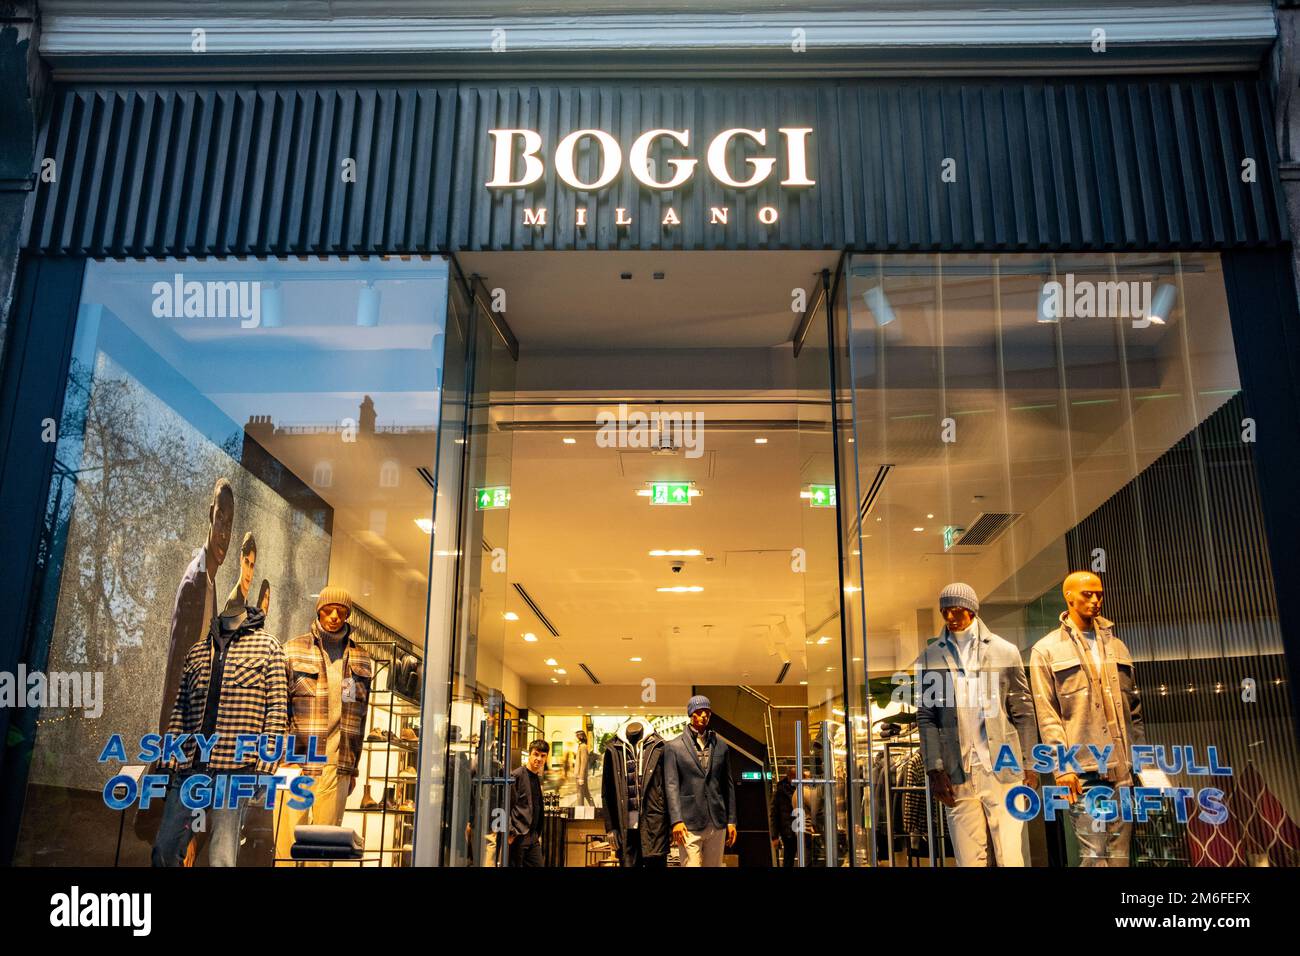 Londra- Boggi Milano store a Chelsea, un marchio di moda italiano Foto Stock